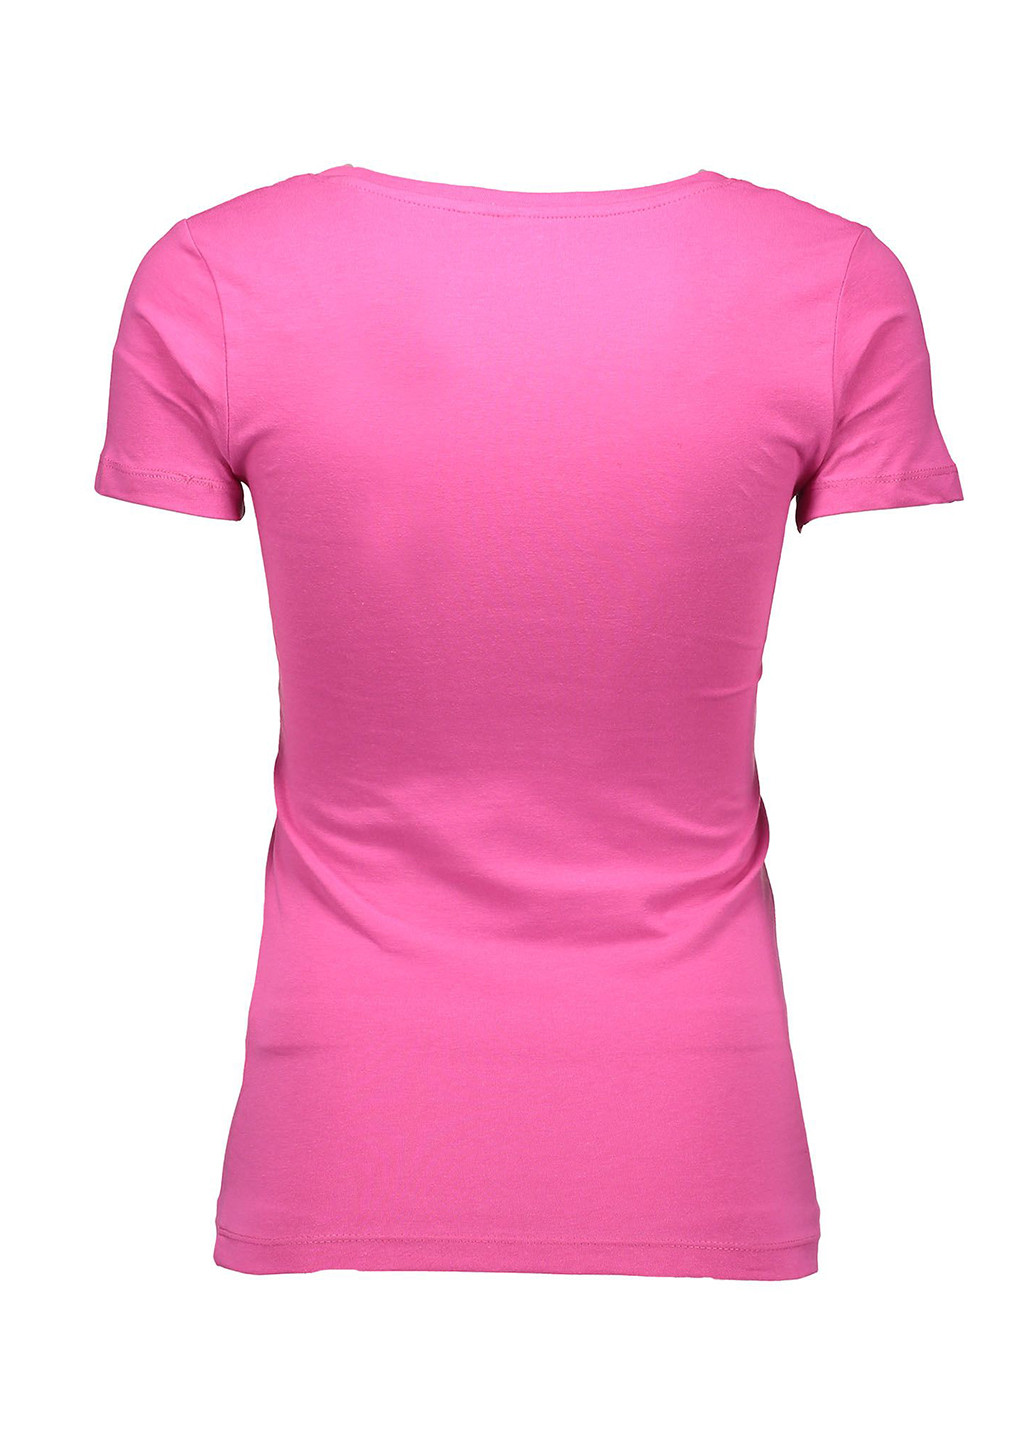 Фуксинова (колору Фукія) літня футболка з коротким рукавом Piazza Italia